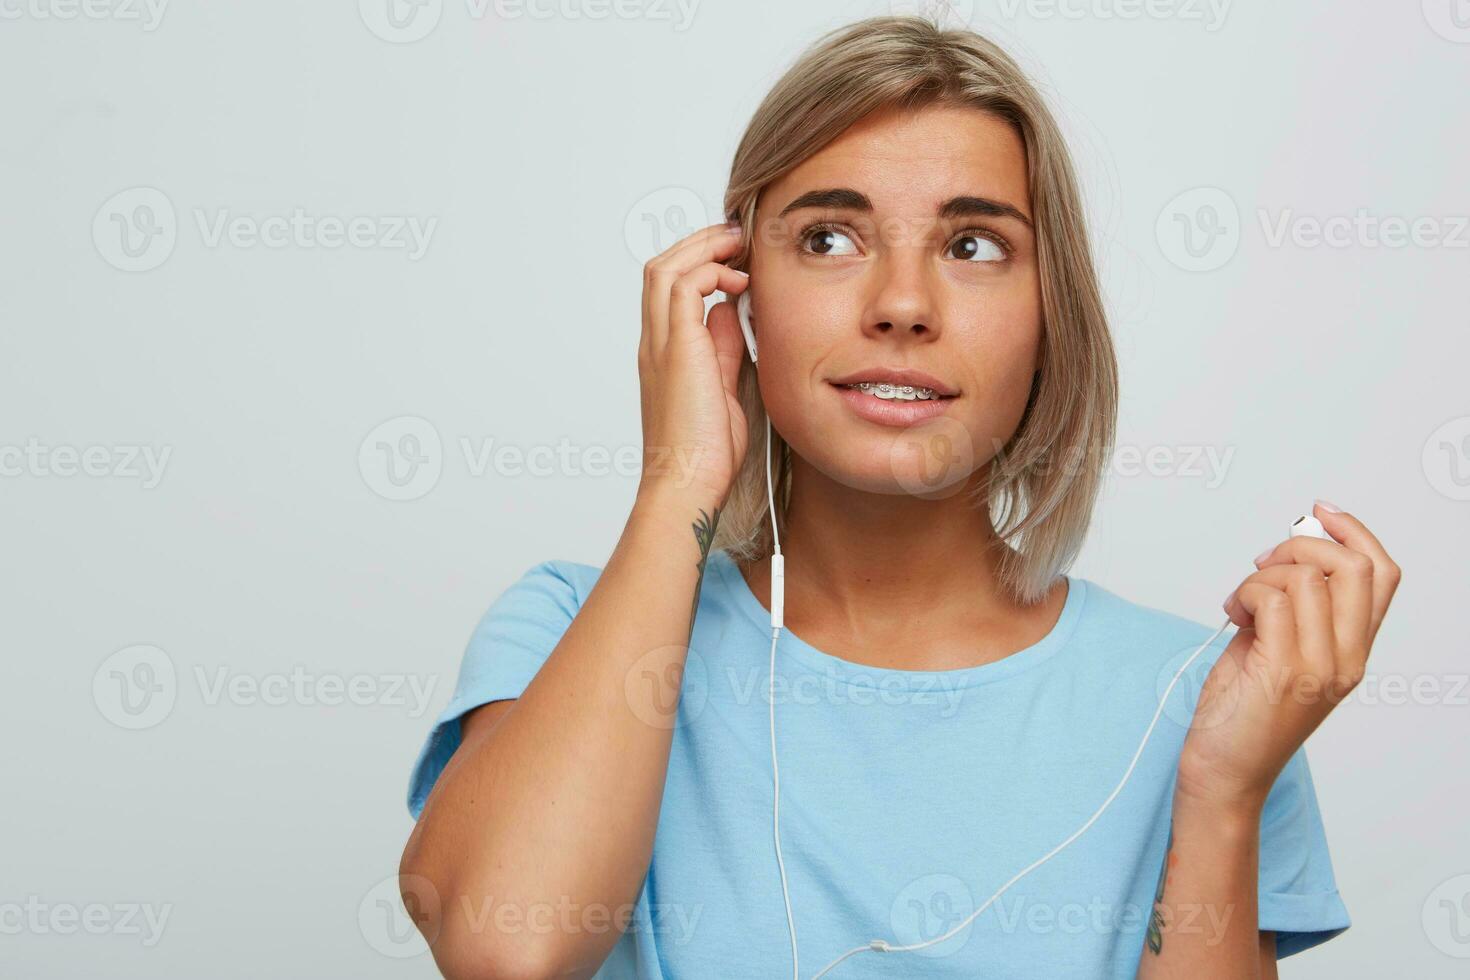 närbild av Lycklig attraktiv blond ung kvinna med tandställning på tänder och hörlurar bär blå t skjorta utseende avslappnad och lyssnande till musik isolerat över vit bakgrund foto